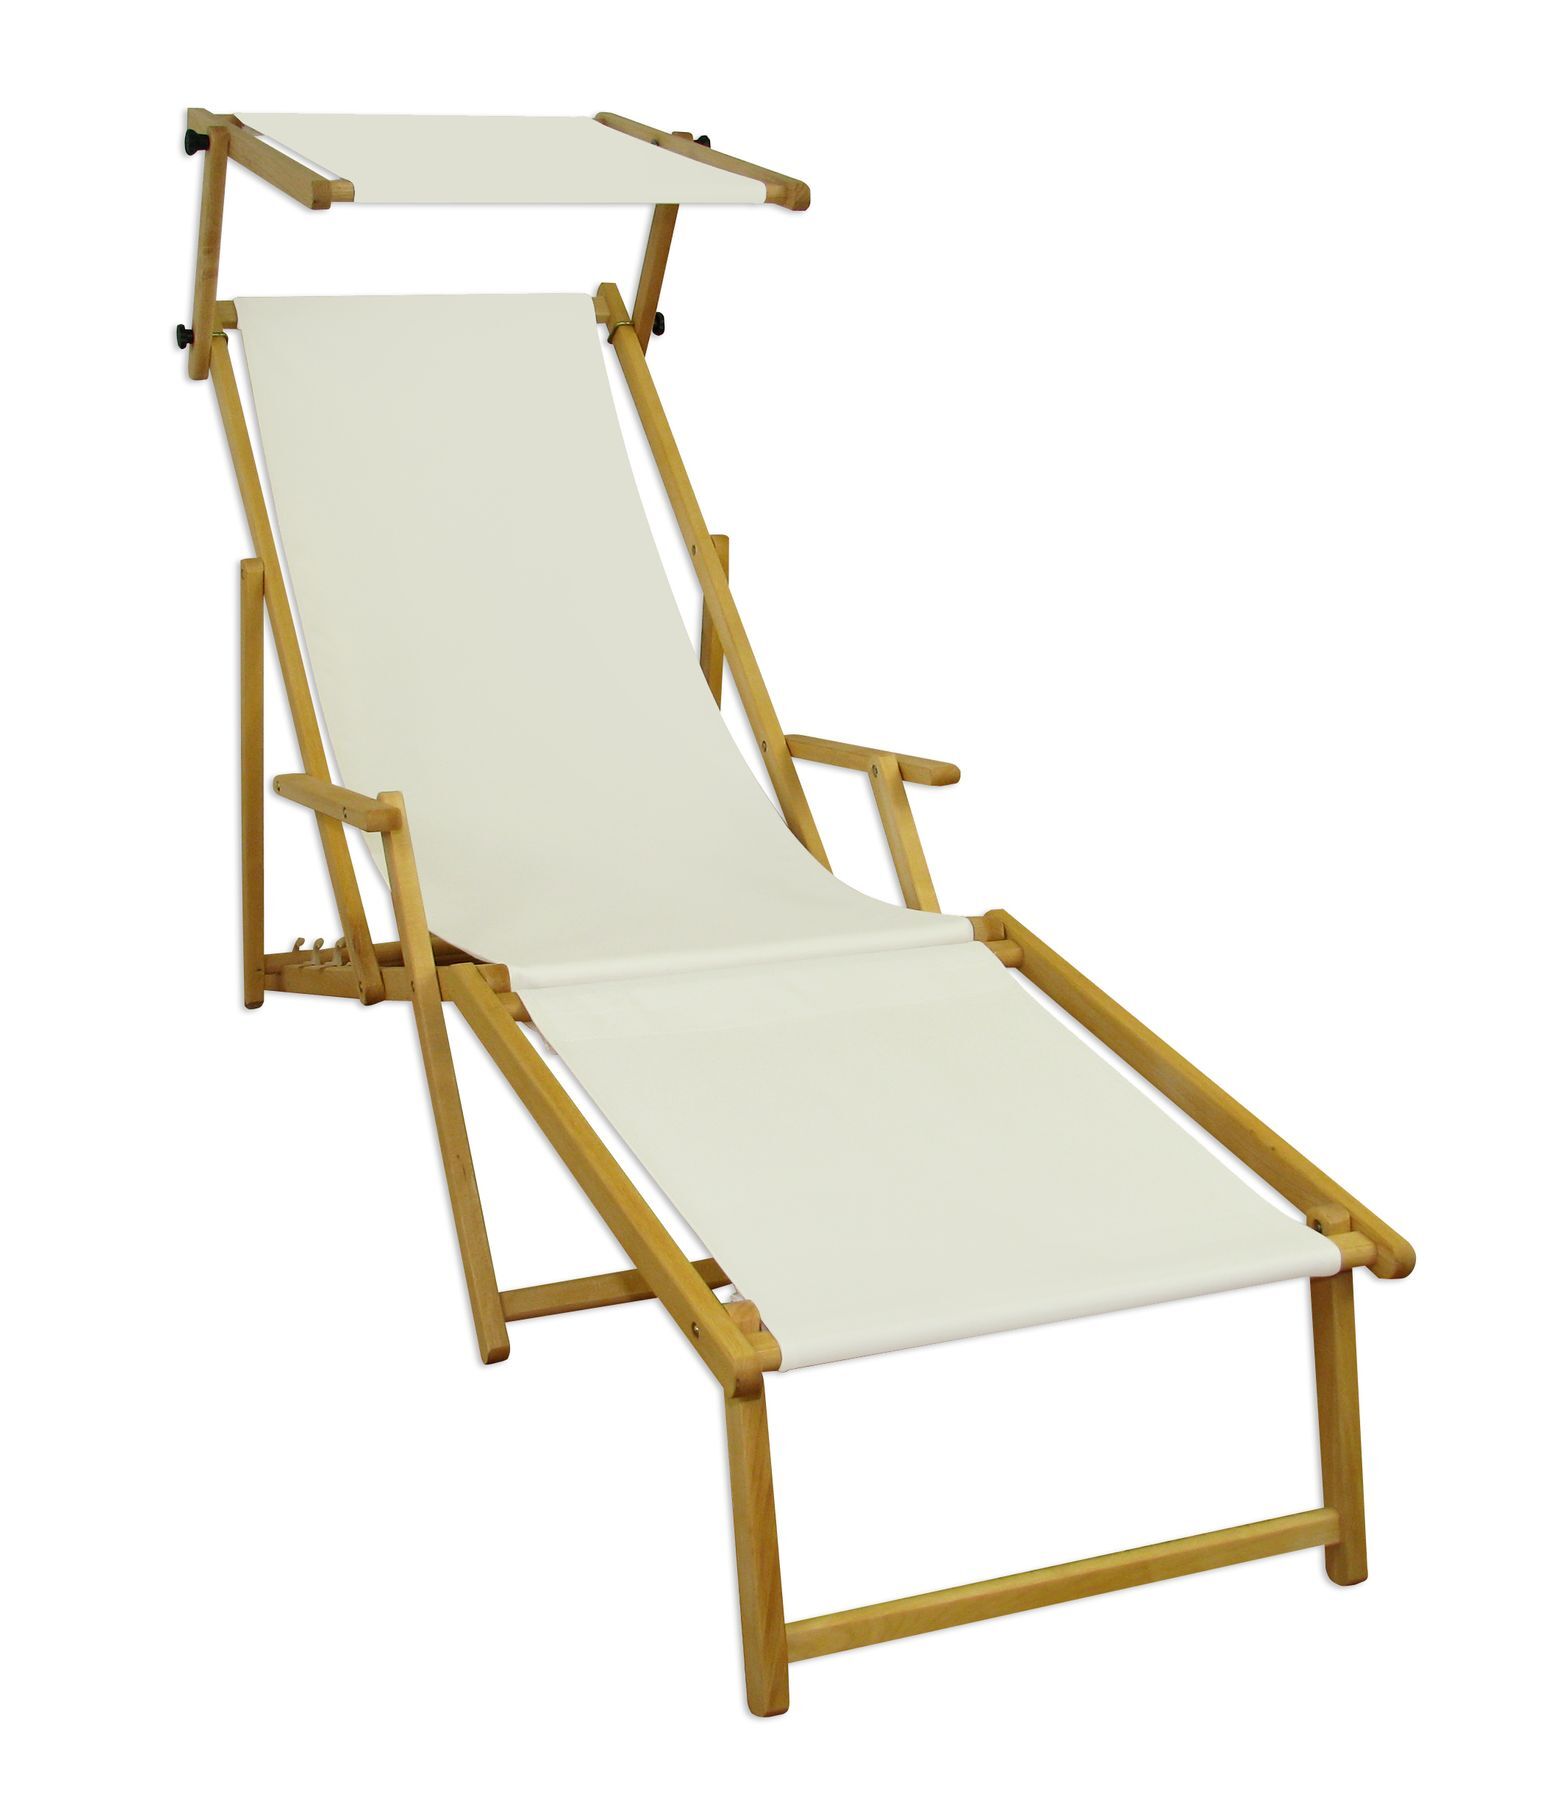 Chaise longue de jardin, chilienne, bain de soleil pliant, bois massif, tissu blanc V-10-303N